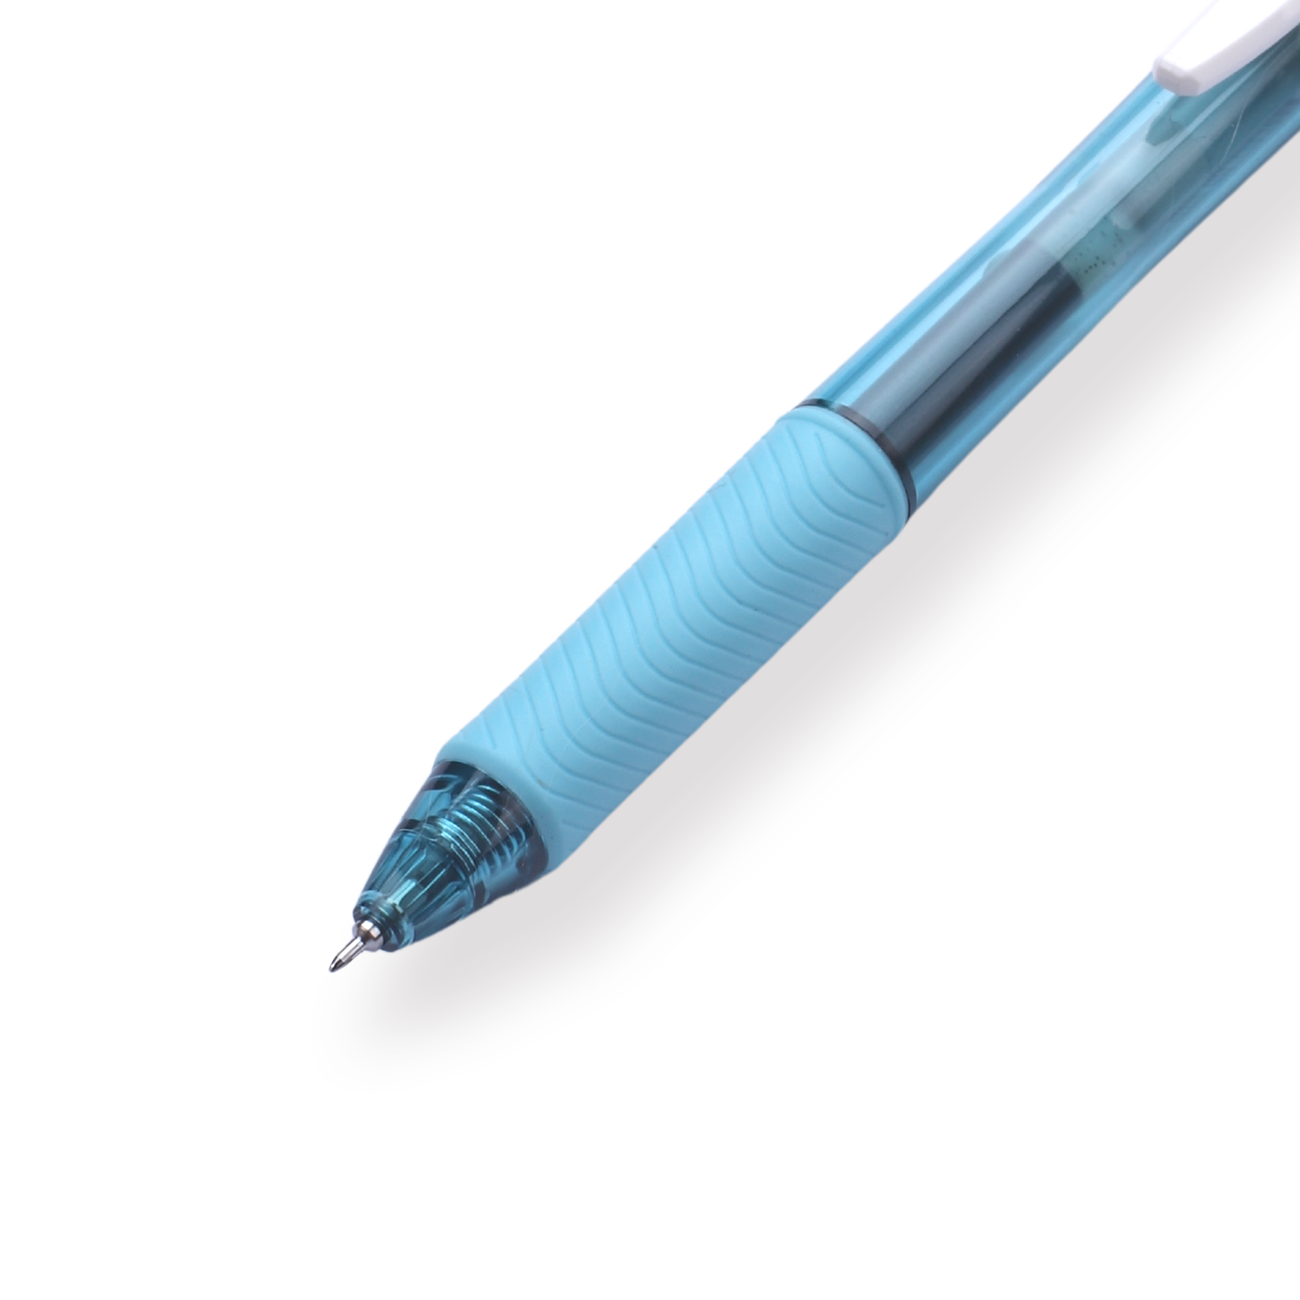 Pentel EnerGel-X Gel Pen - Needle-Point - 0.5 mm - Black (Light Blue Body)